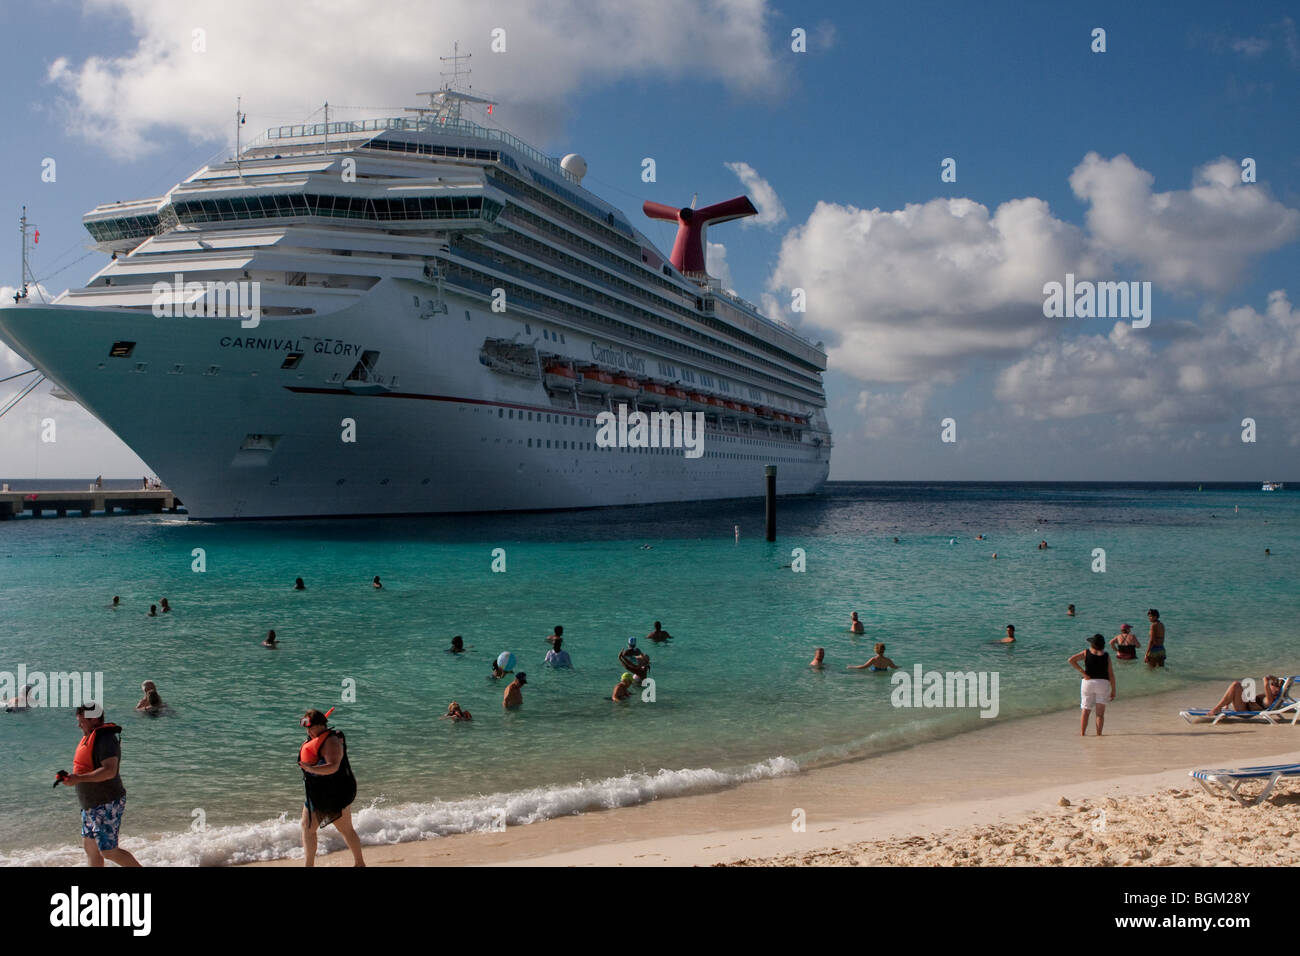 Kreuzfahrtschiff Carnival Glory Kreuzfahrtterminals, Grand Turk Island, British West Indies angedockt.  Schwimmer im Vordergrund. Stockfoto